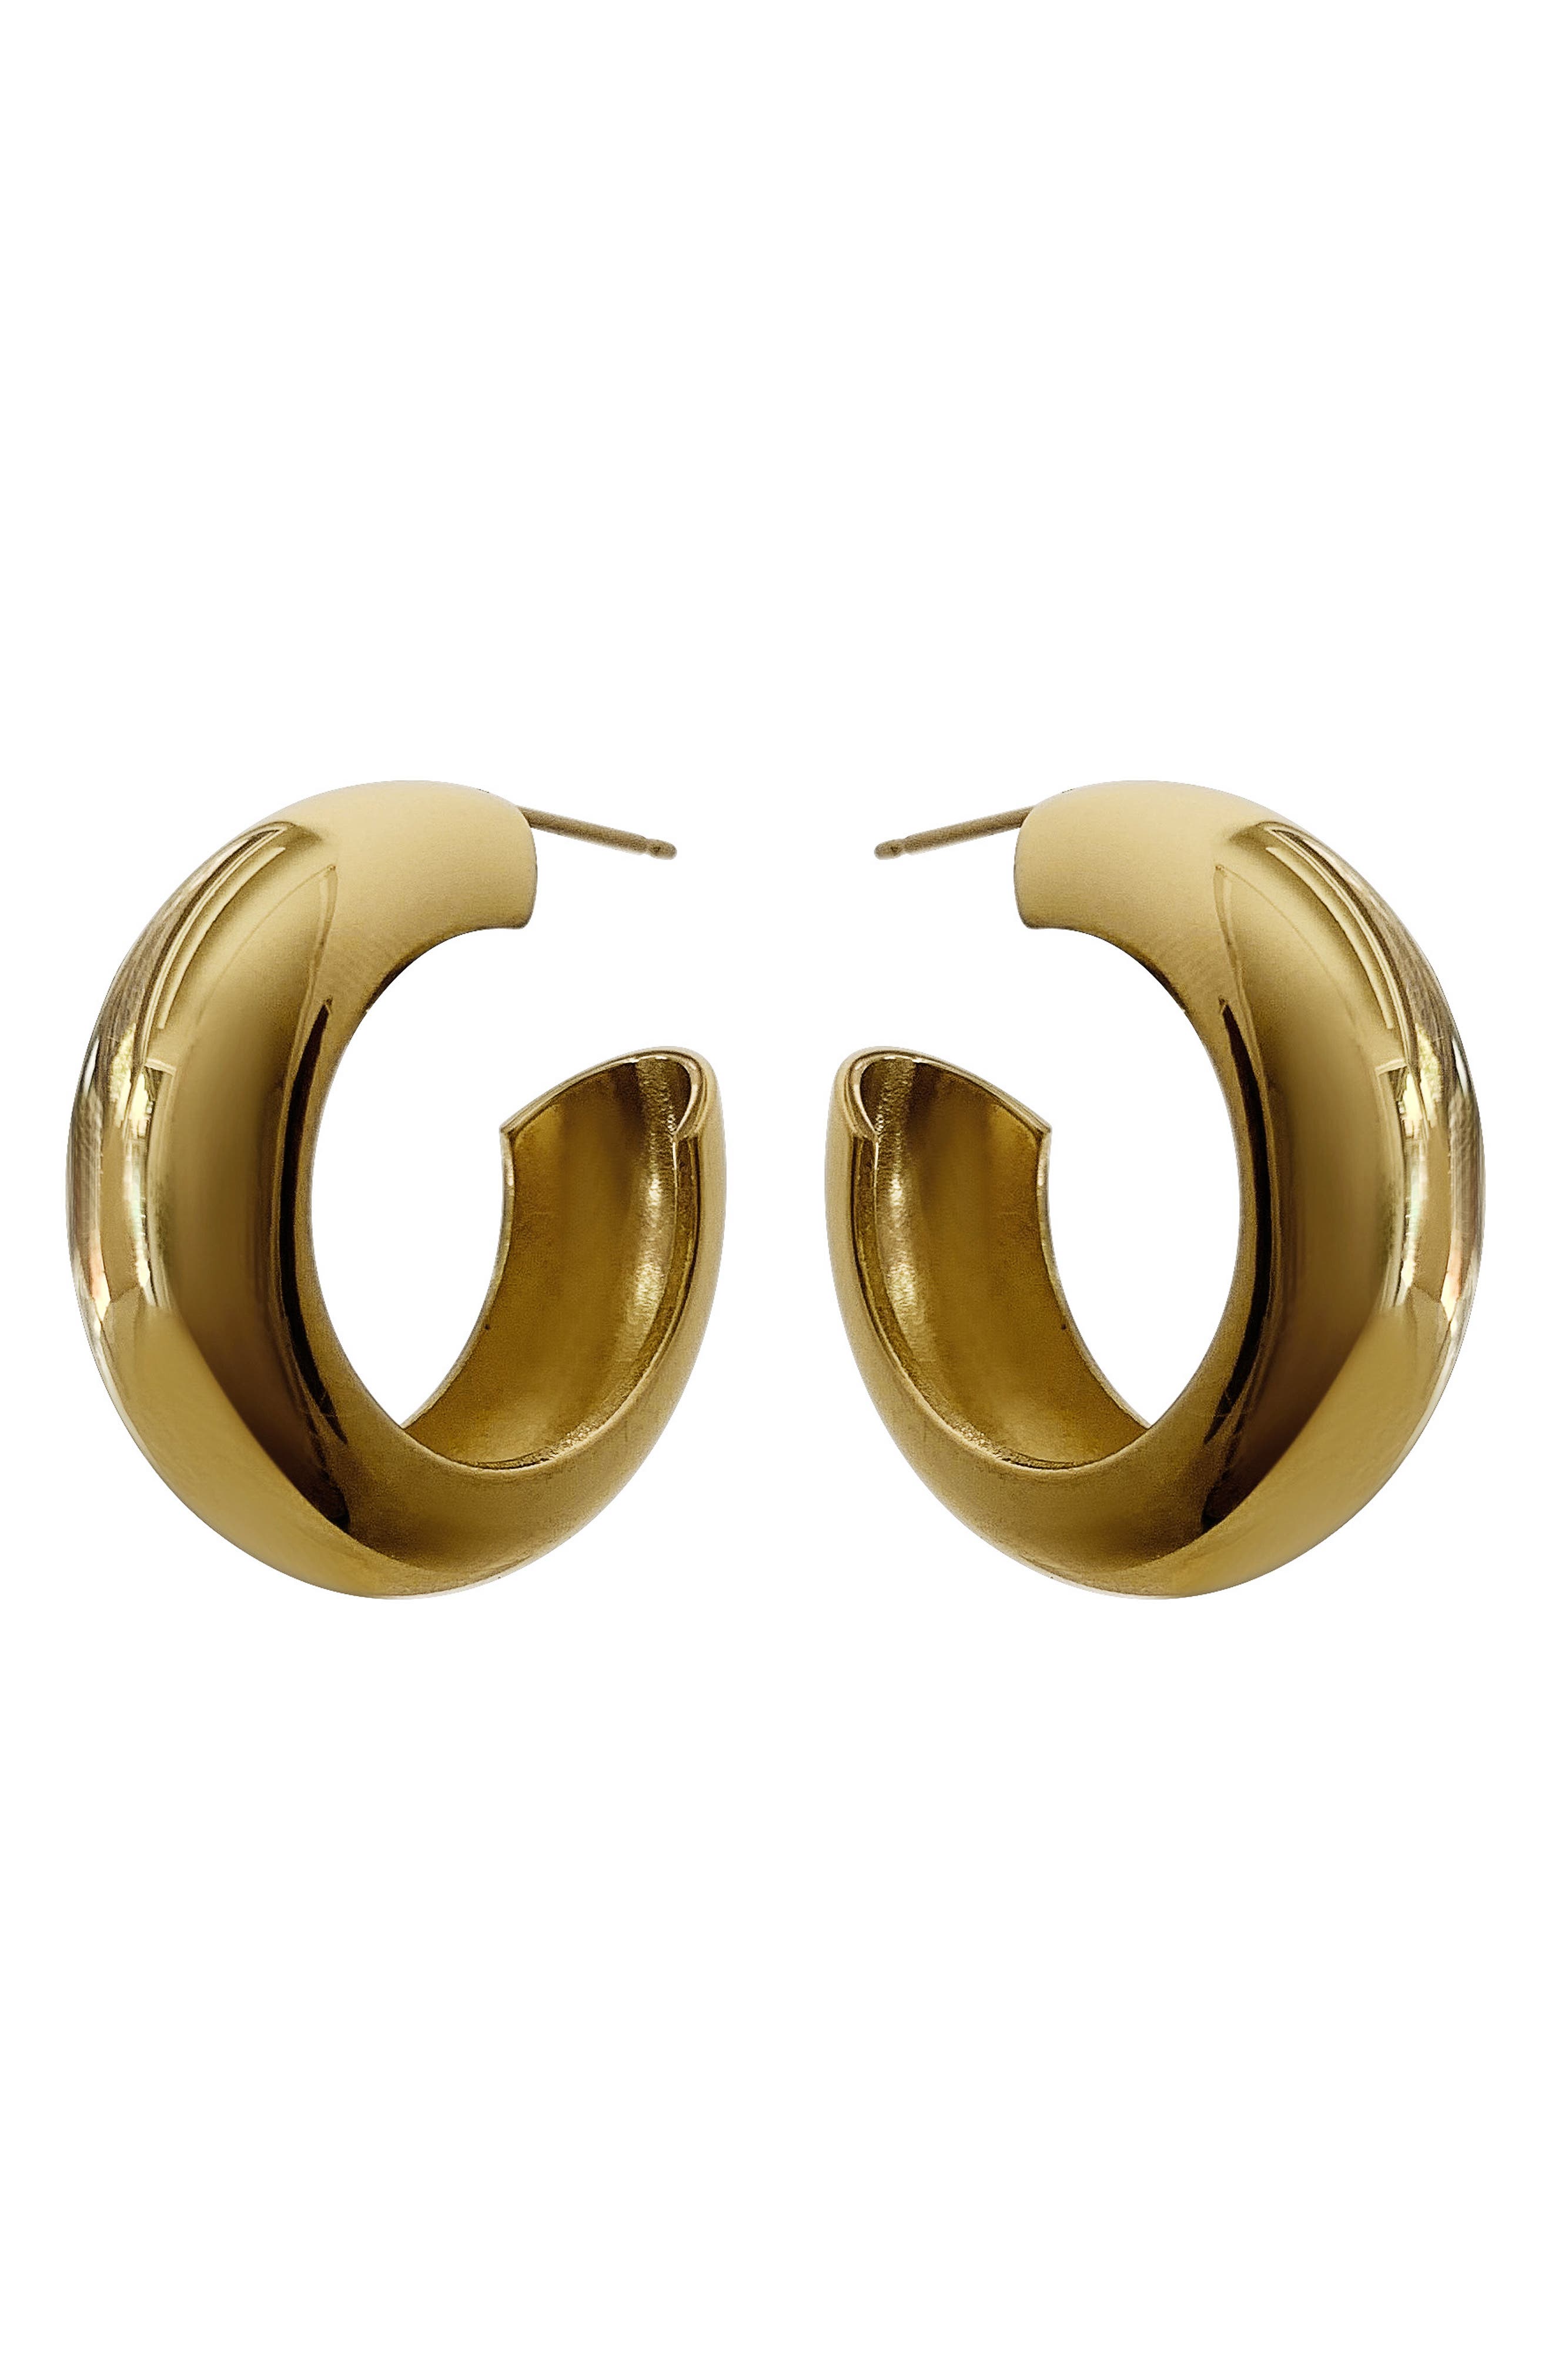 Laura Lombardi Cusp Hoop Earrings in Brass at Nordstrom